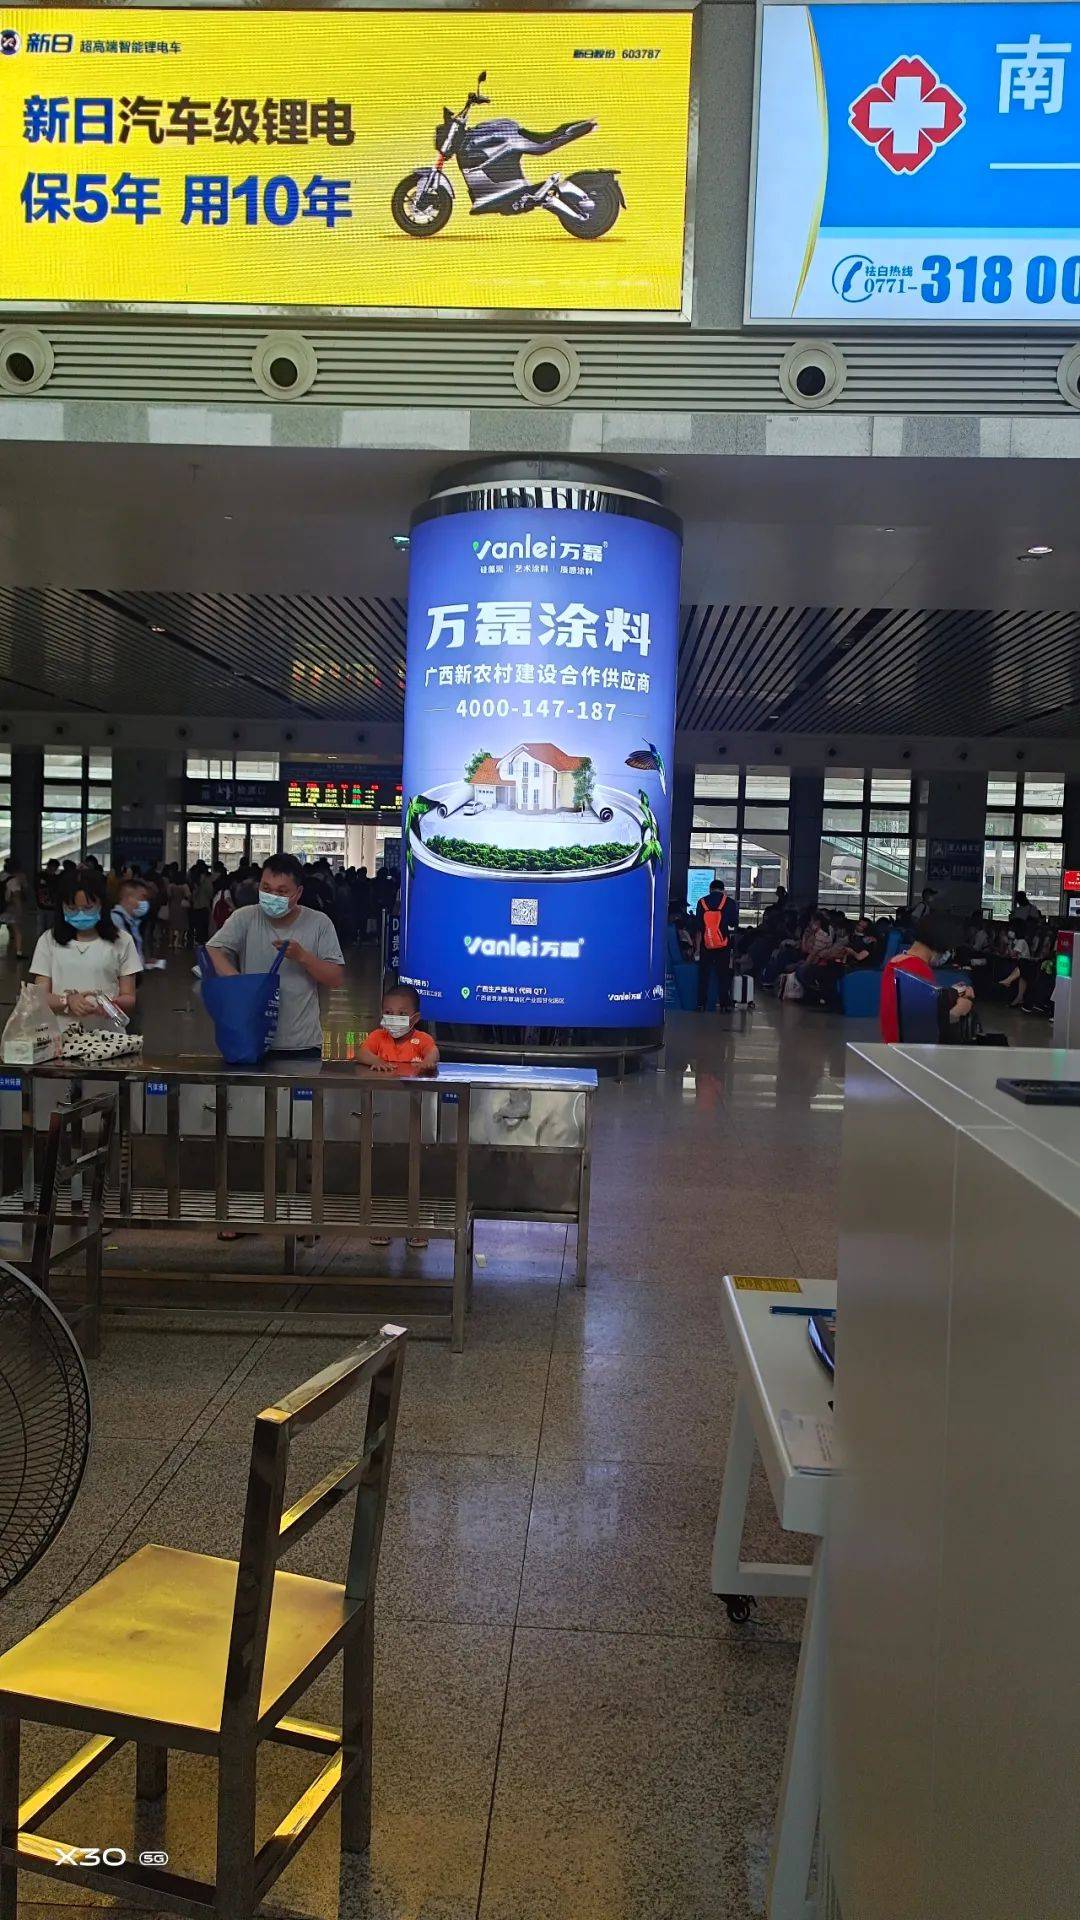 官宣 | 廣西第一幅高鐵廣告落戶貴港，萬磊新農村建設合作供應商正式上畫